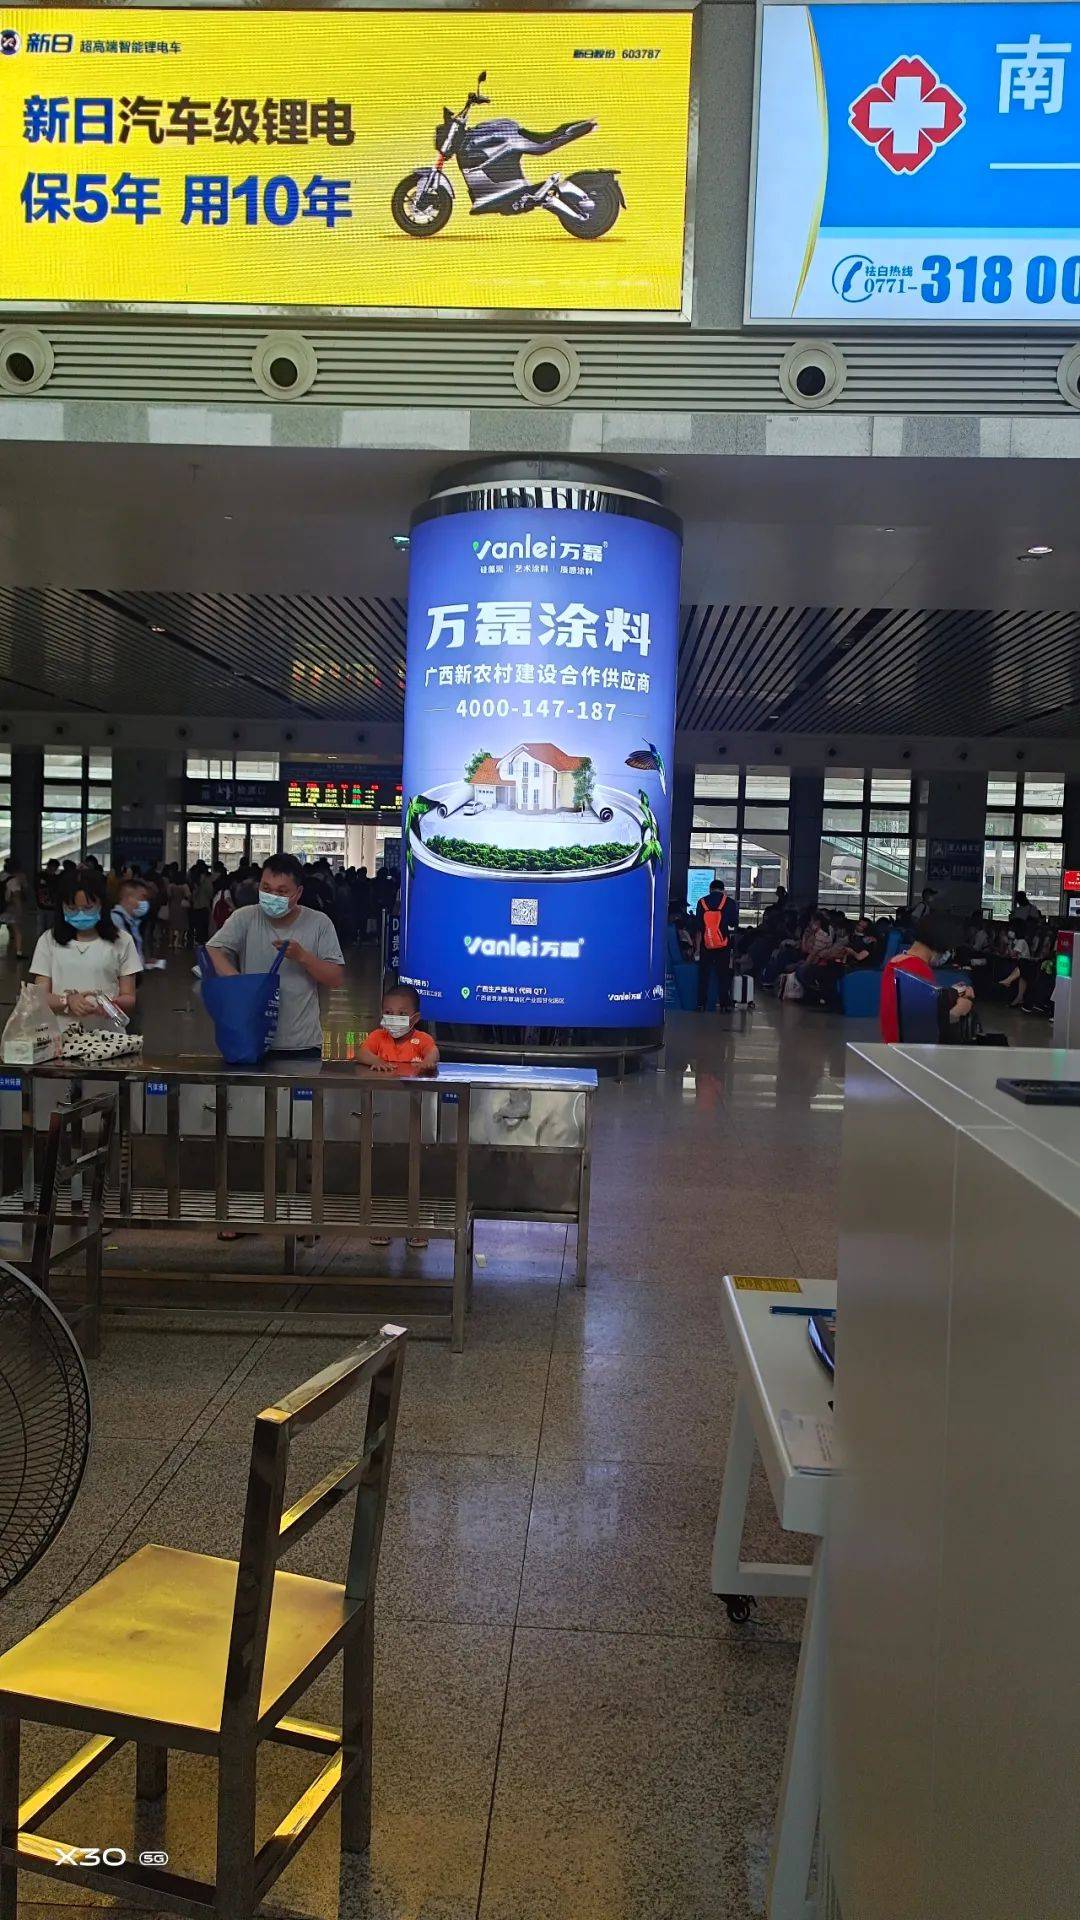 官宣 | 廣西第一幅高鐵廣告落戶貴港，萬磊新農村建設合作供應商正式上畫